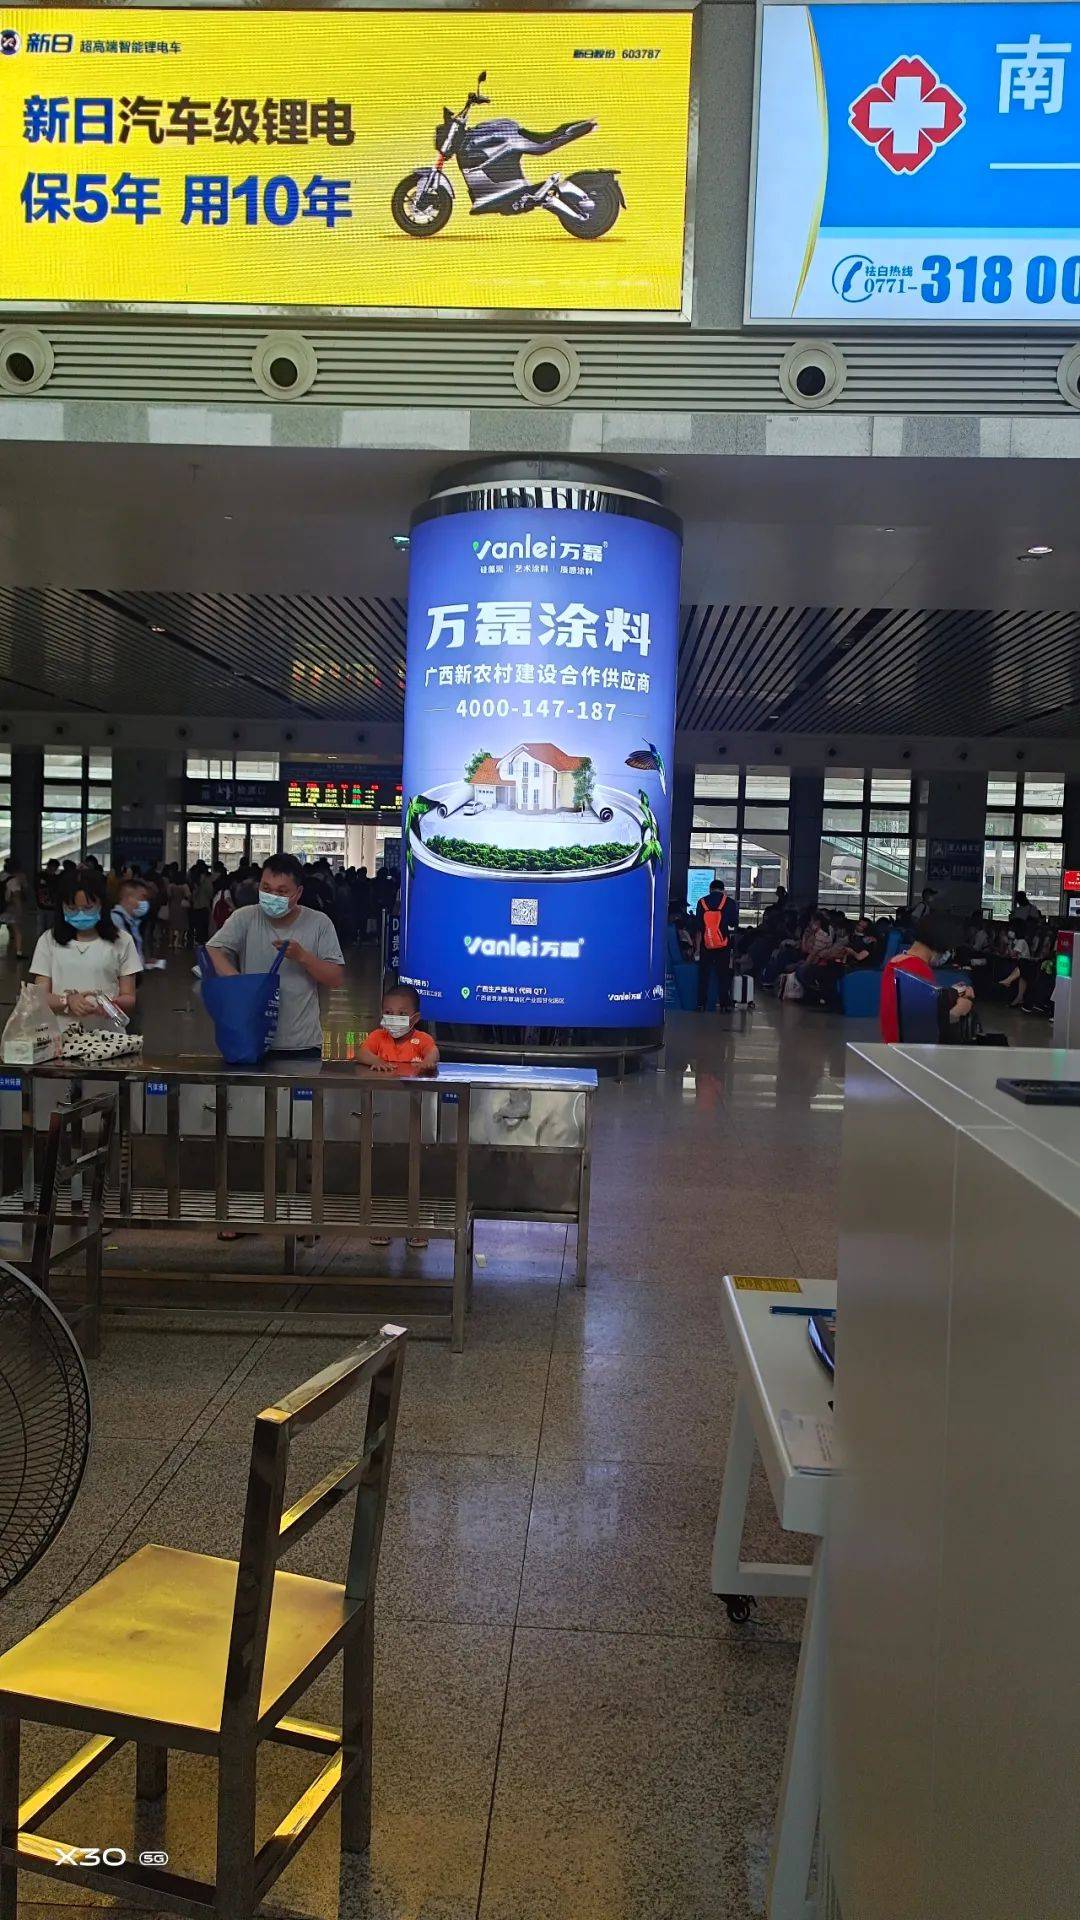 官宣 | 廣西第一幅高鐵廣告落戶貴港，萬磊新農村建設合作供應商正式上畫